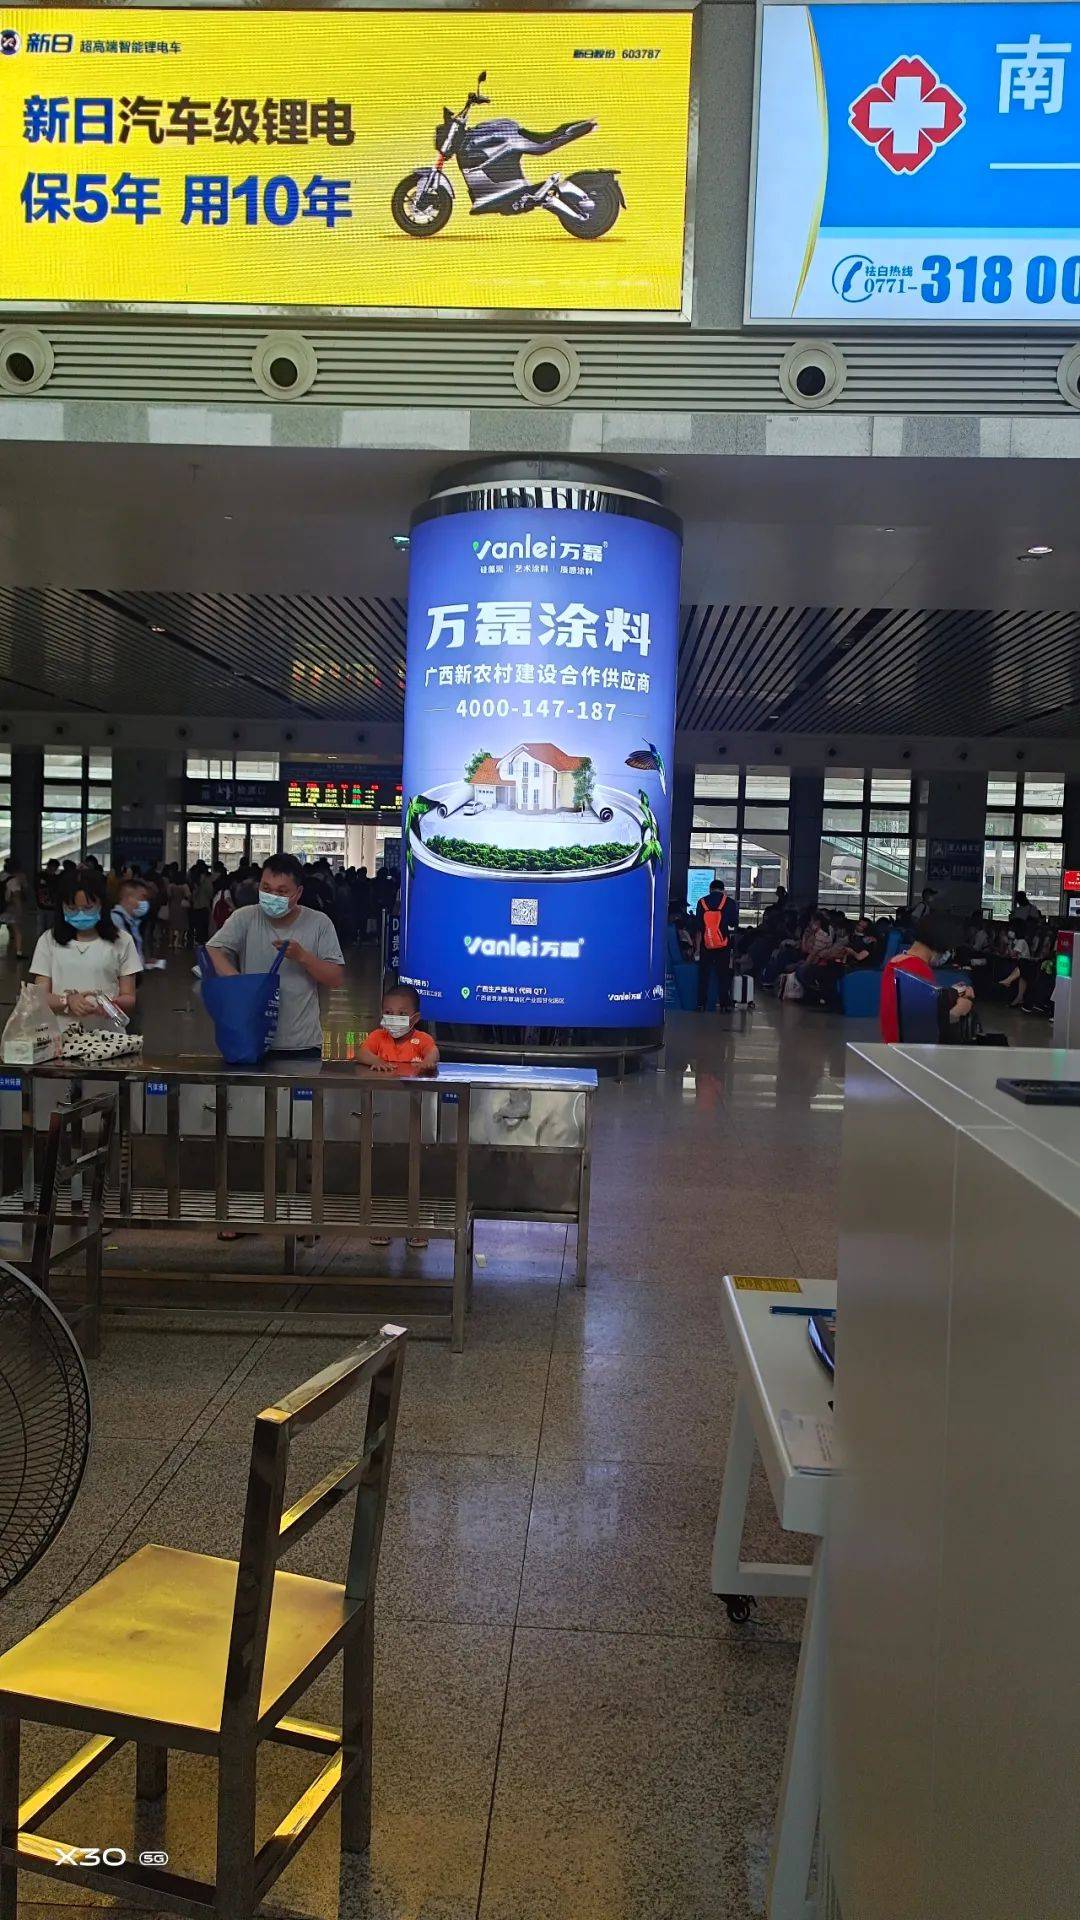 官宣 | 廣西第一幅高鐵廣告落戶貴港，萬磊新農村建設合作供應商正式上畫